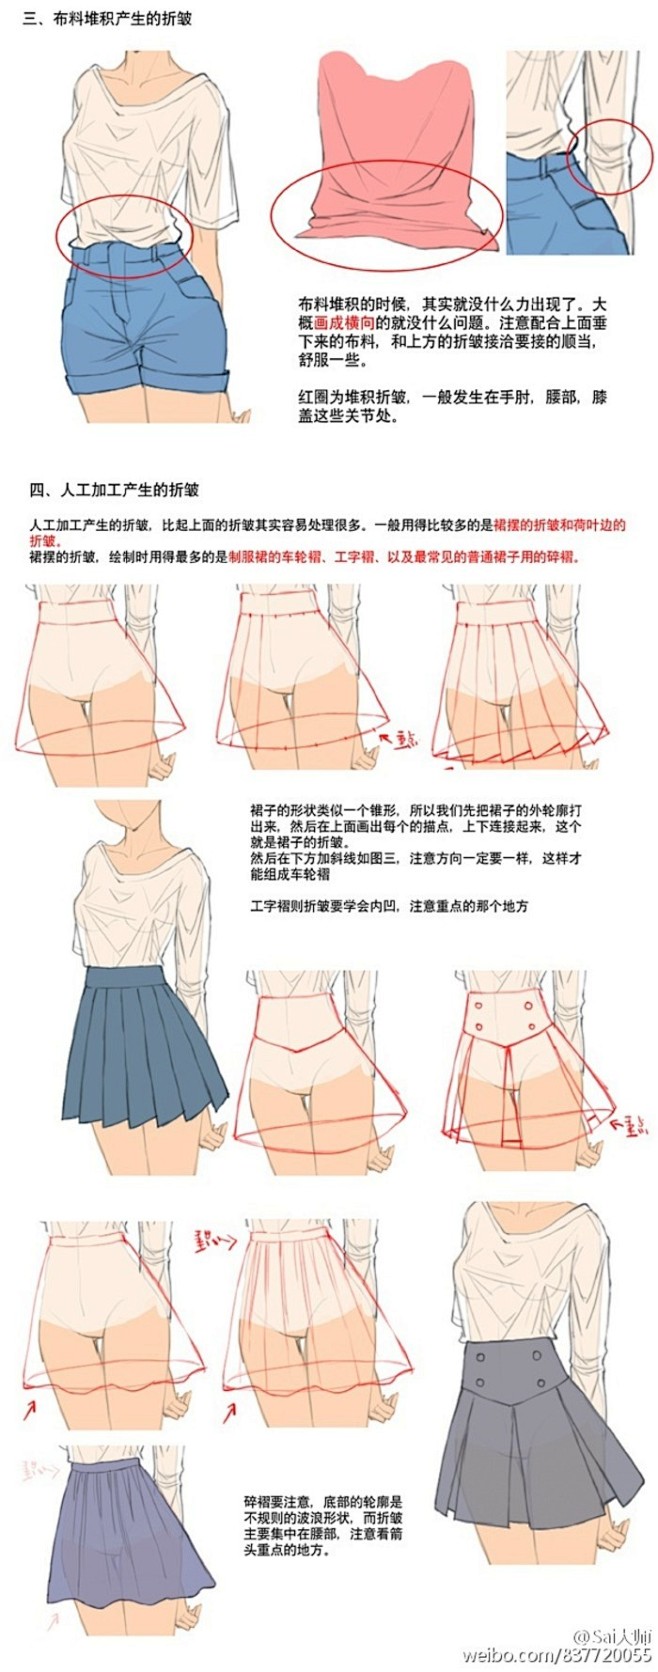 #绘画学习# 绘画参考# 衣服褶皱的绘制...